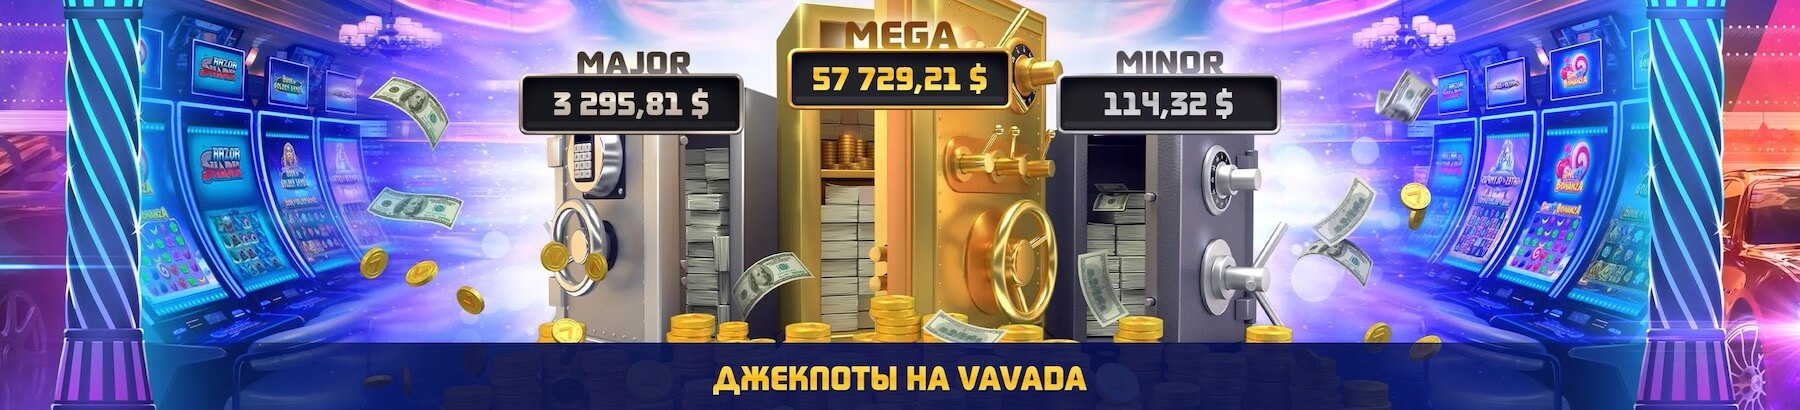 Приветственный бонус 1000$ + 100 фриспинов от Vavada casino